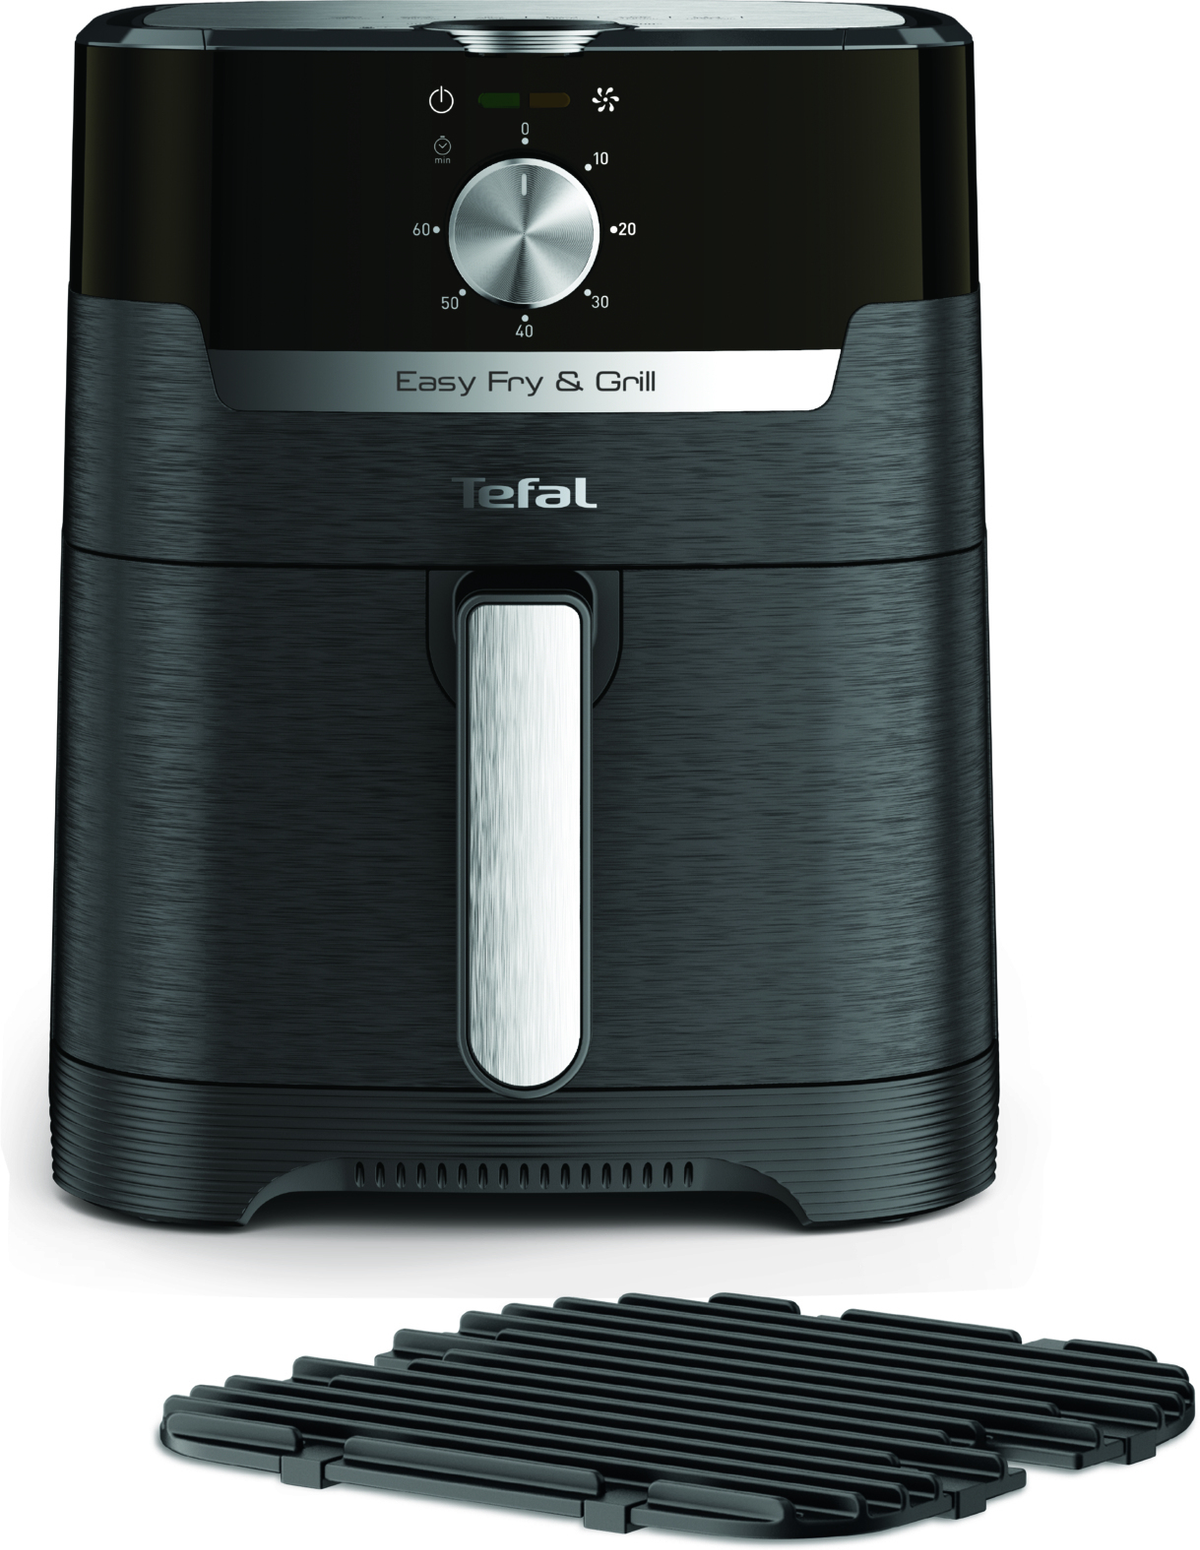 Watt schwarz Grill EY5018 Fry Easy & Heißluftfritteuse TEFAL 1400 Classic